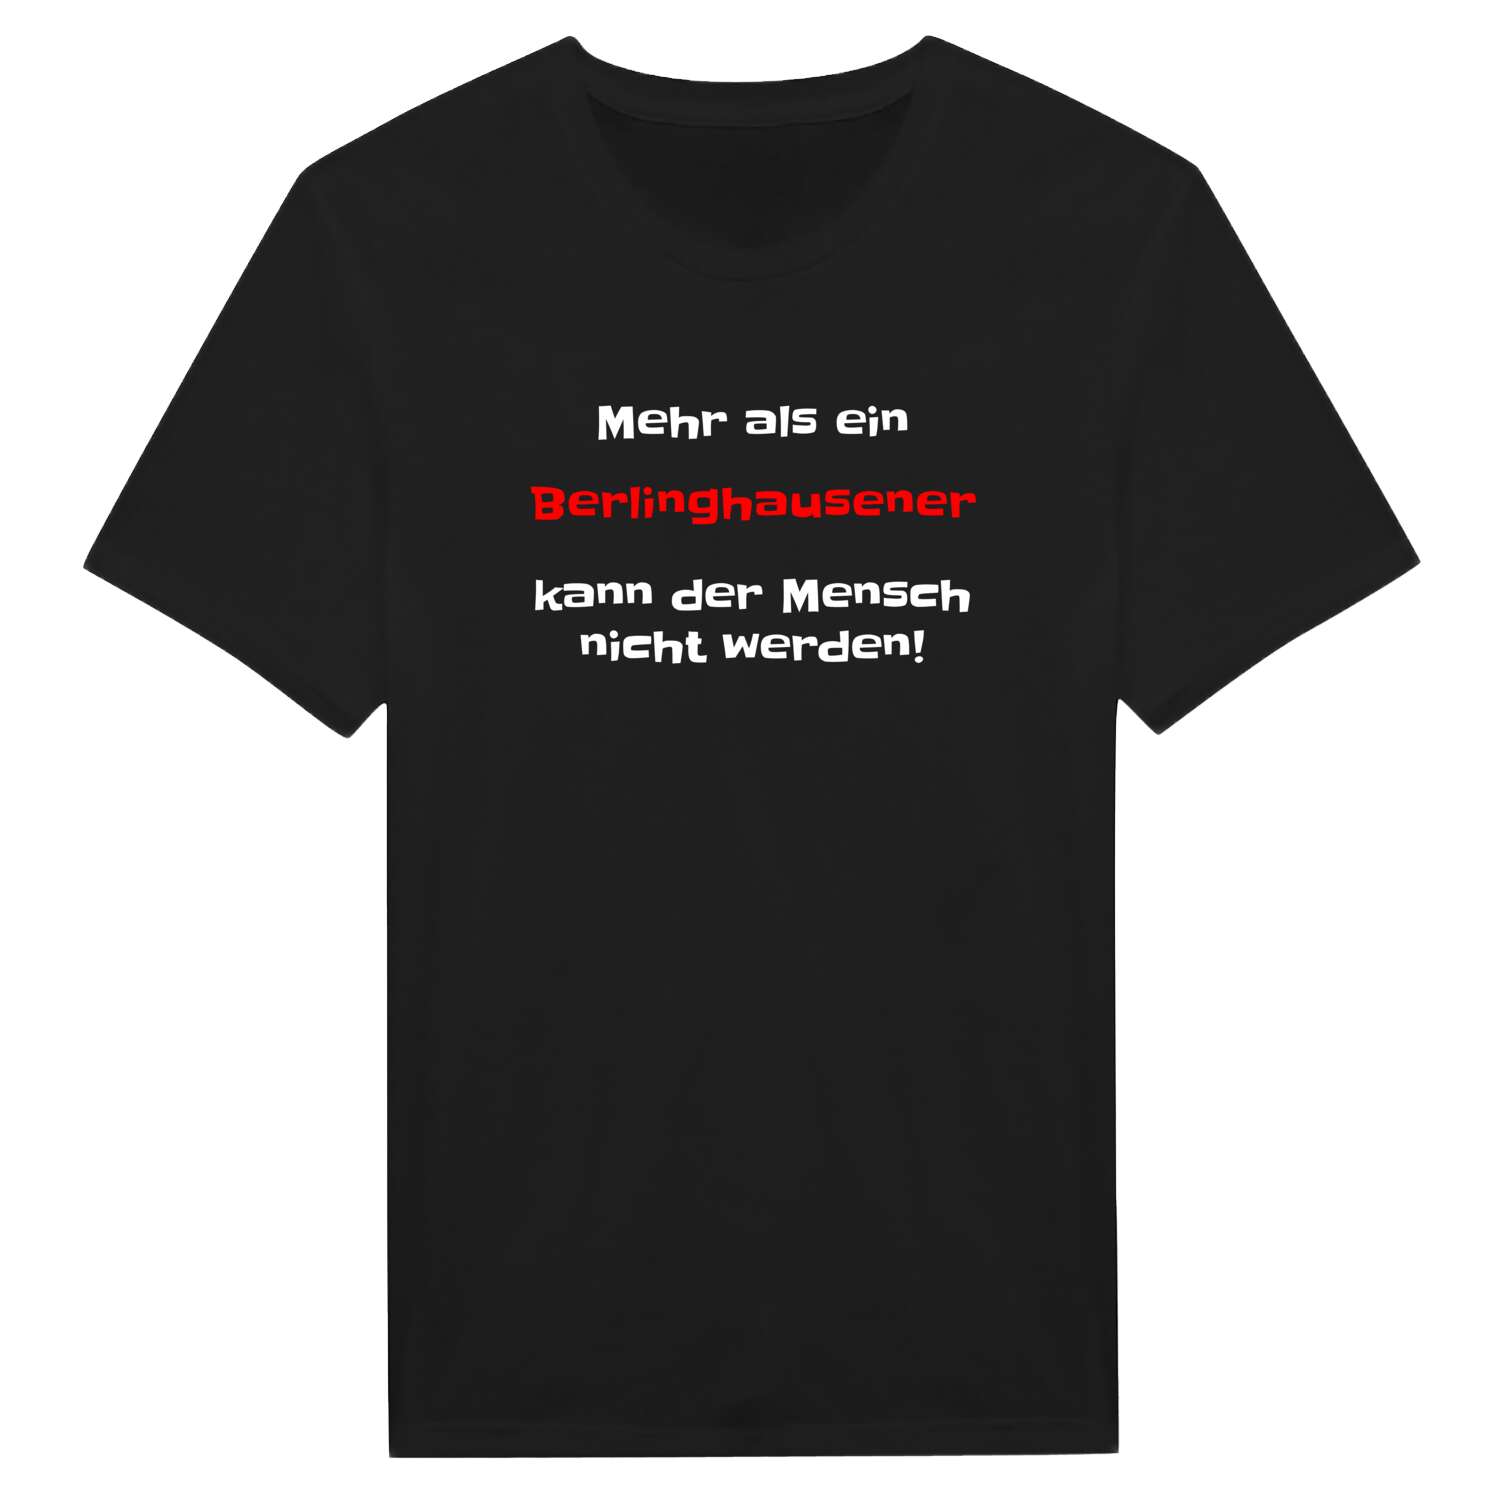 Berlinghausen T-Shirt »Mehr als ein«